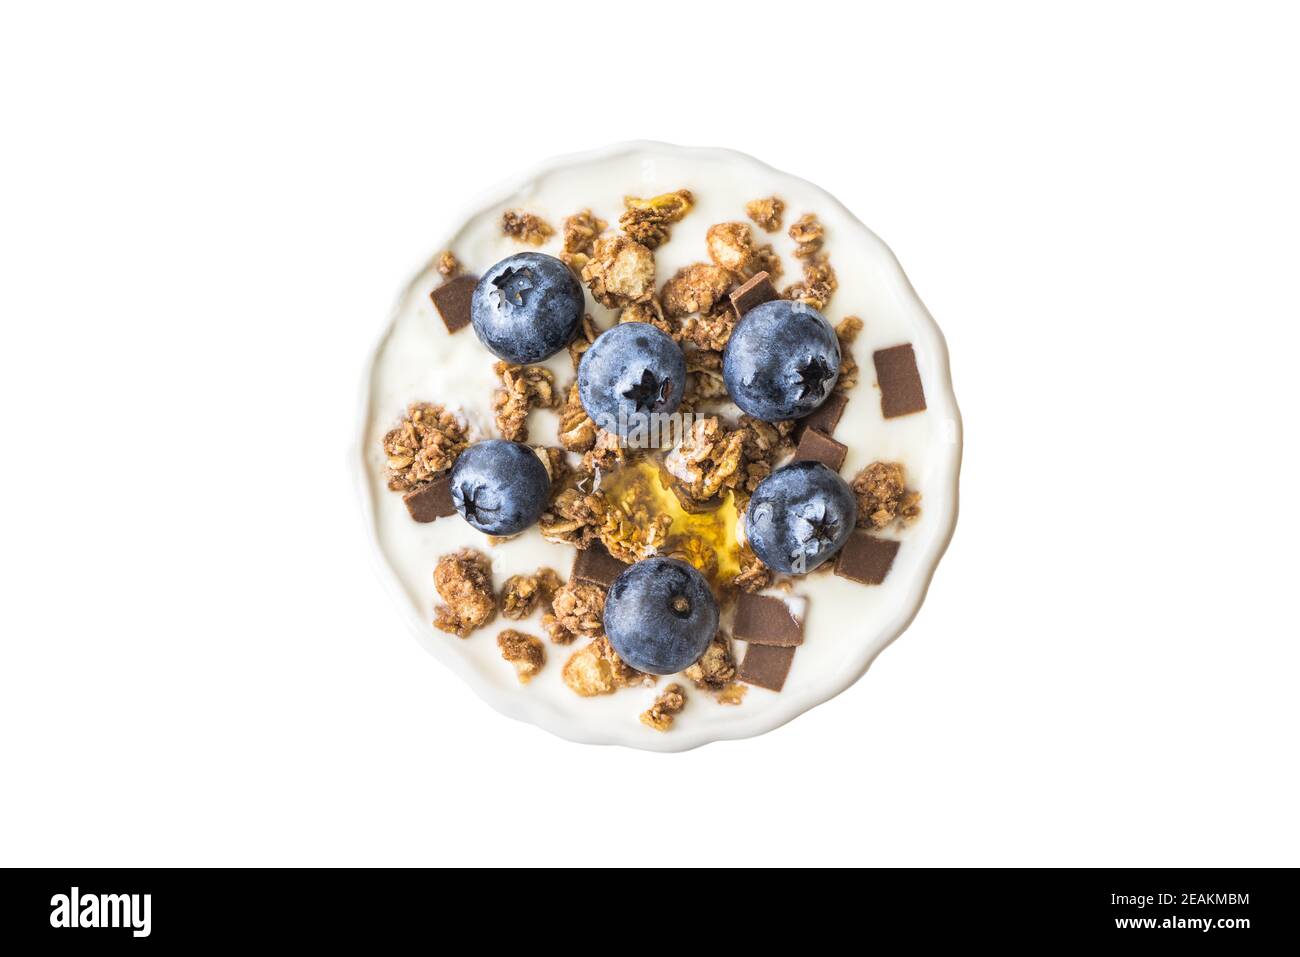 Yogurt with Blueberries and Muesli Stock Photo